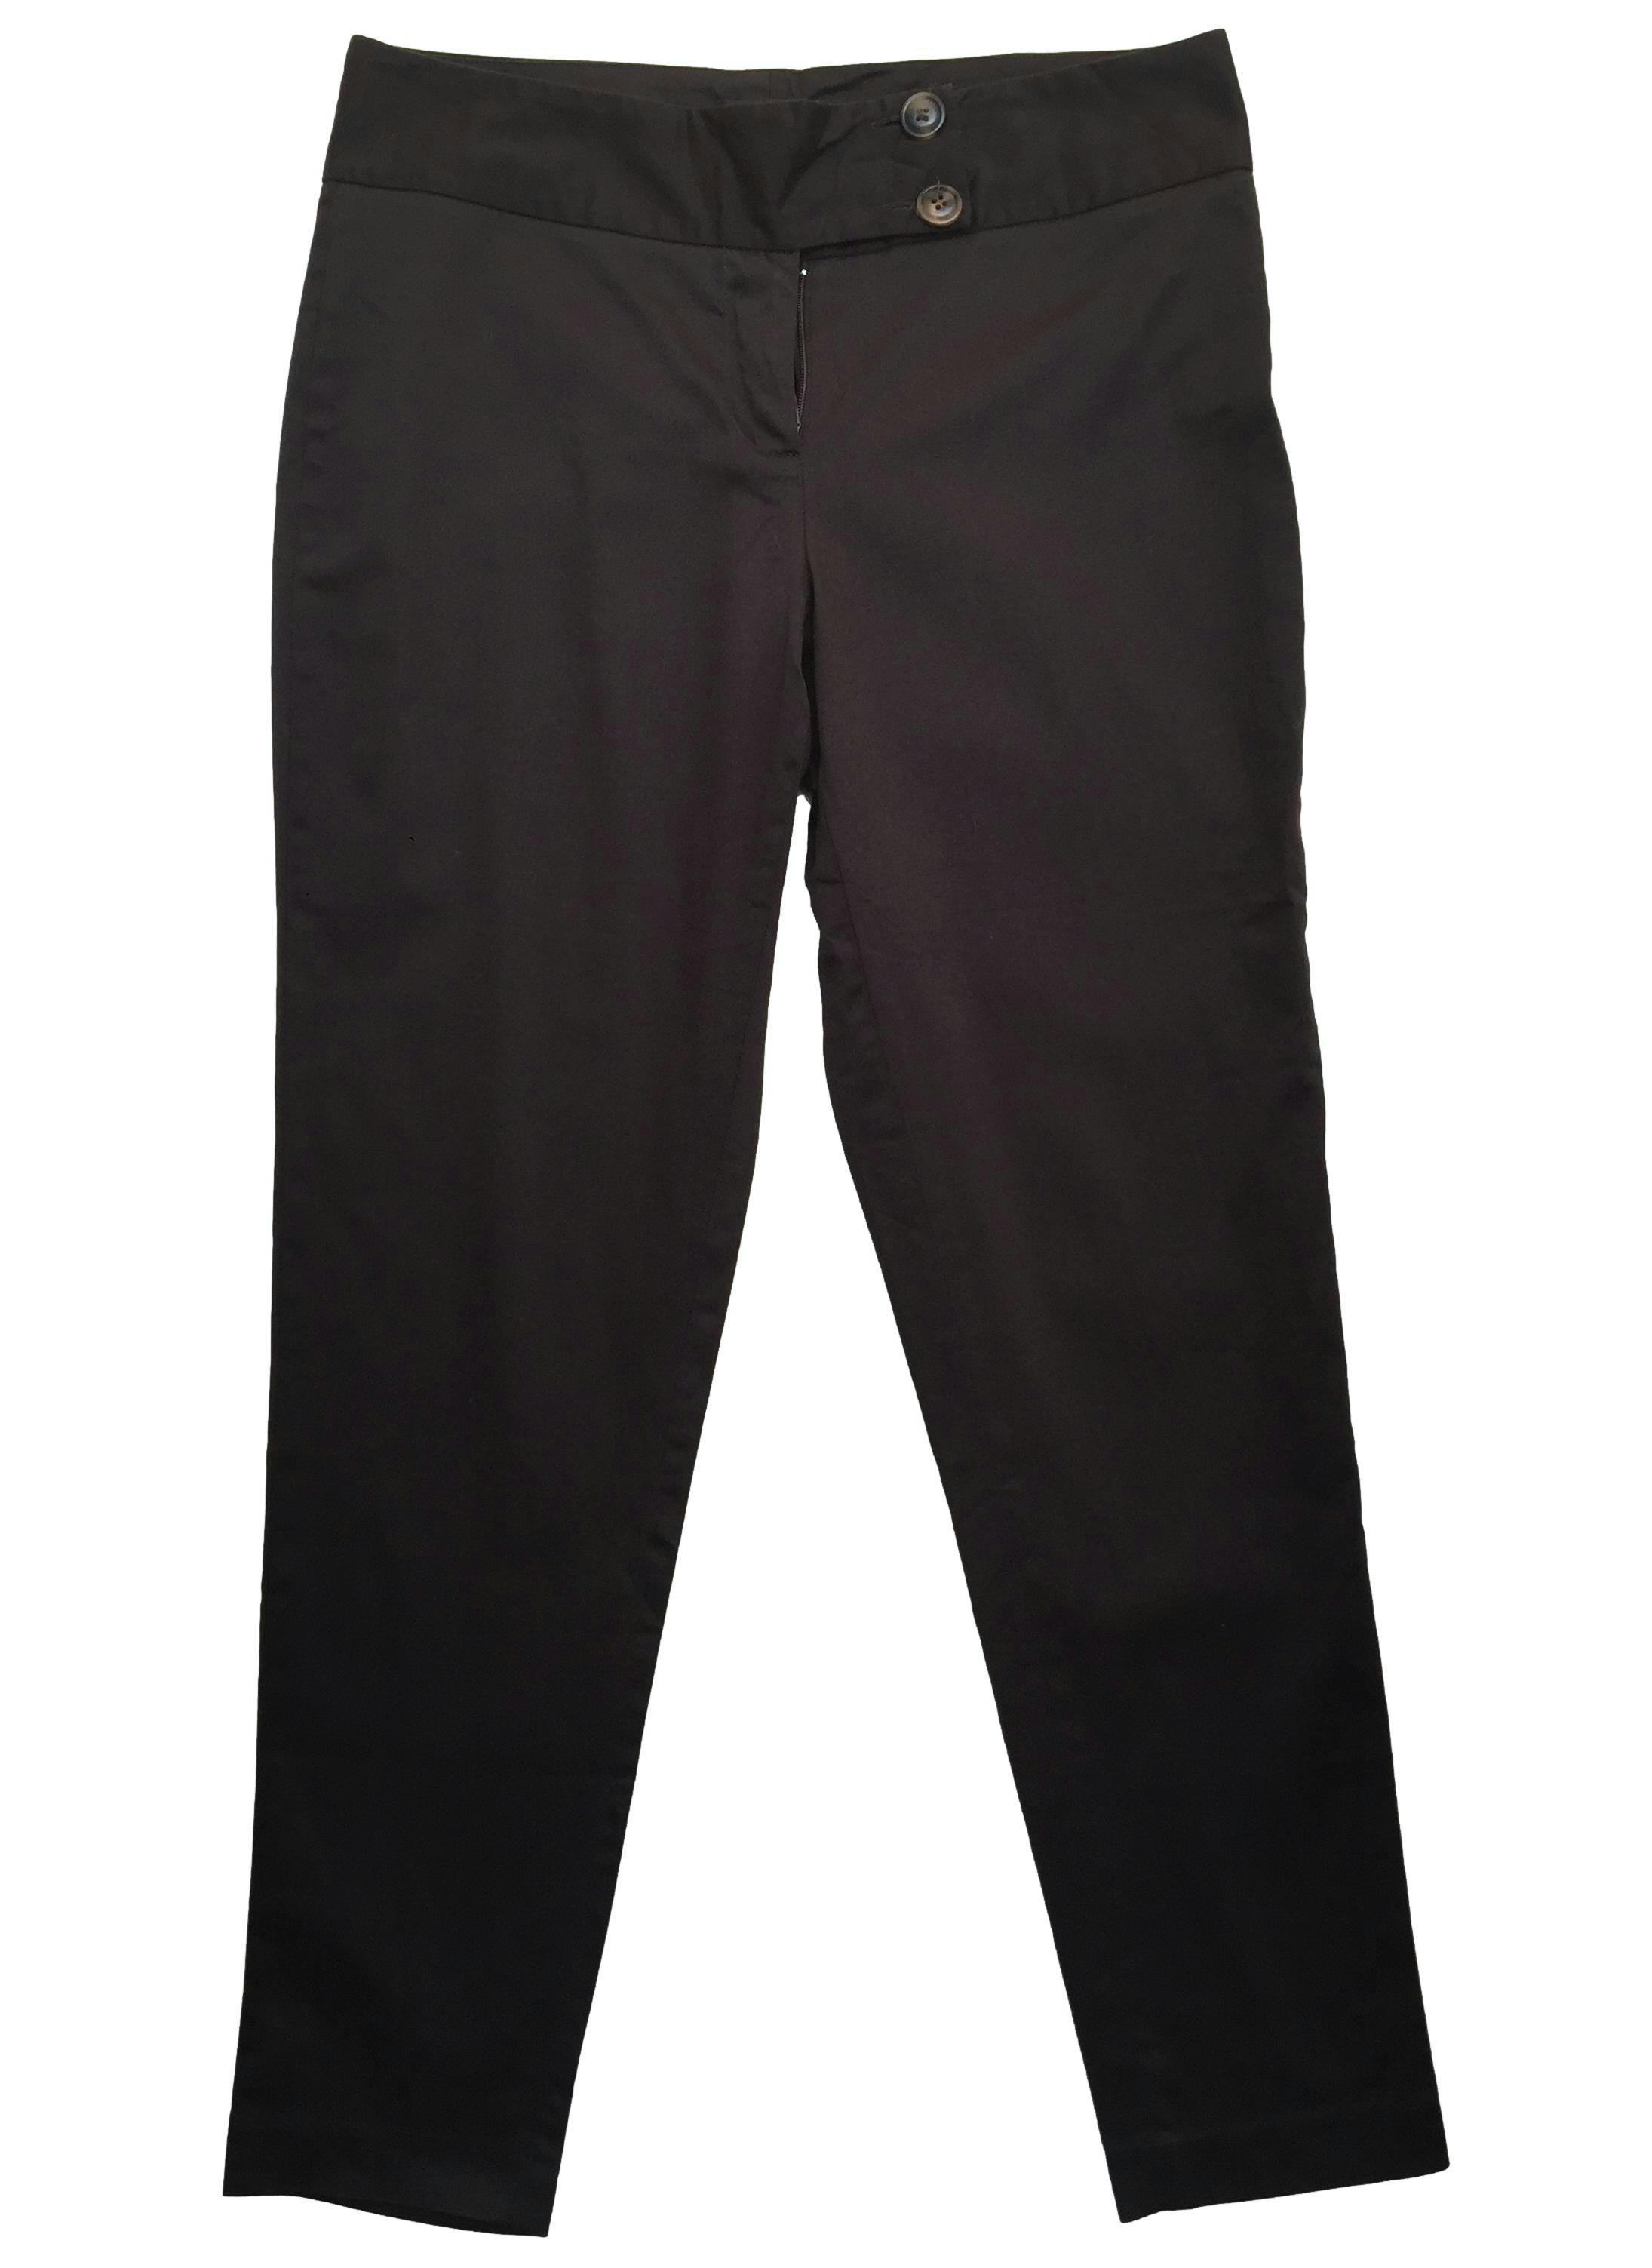 Pantalón marrón corte slim con dos botones en pretina. Cintura 76cm Tiro 24cm Largo 92cm